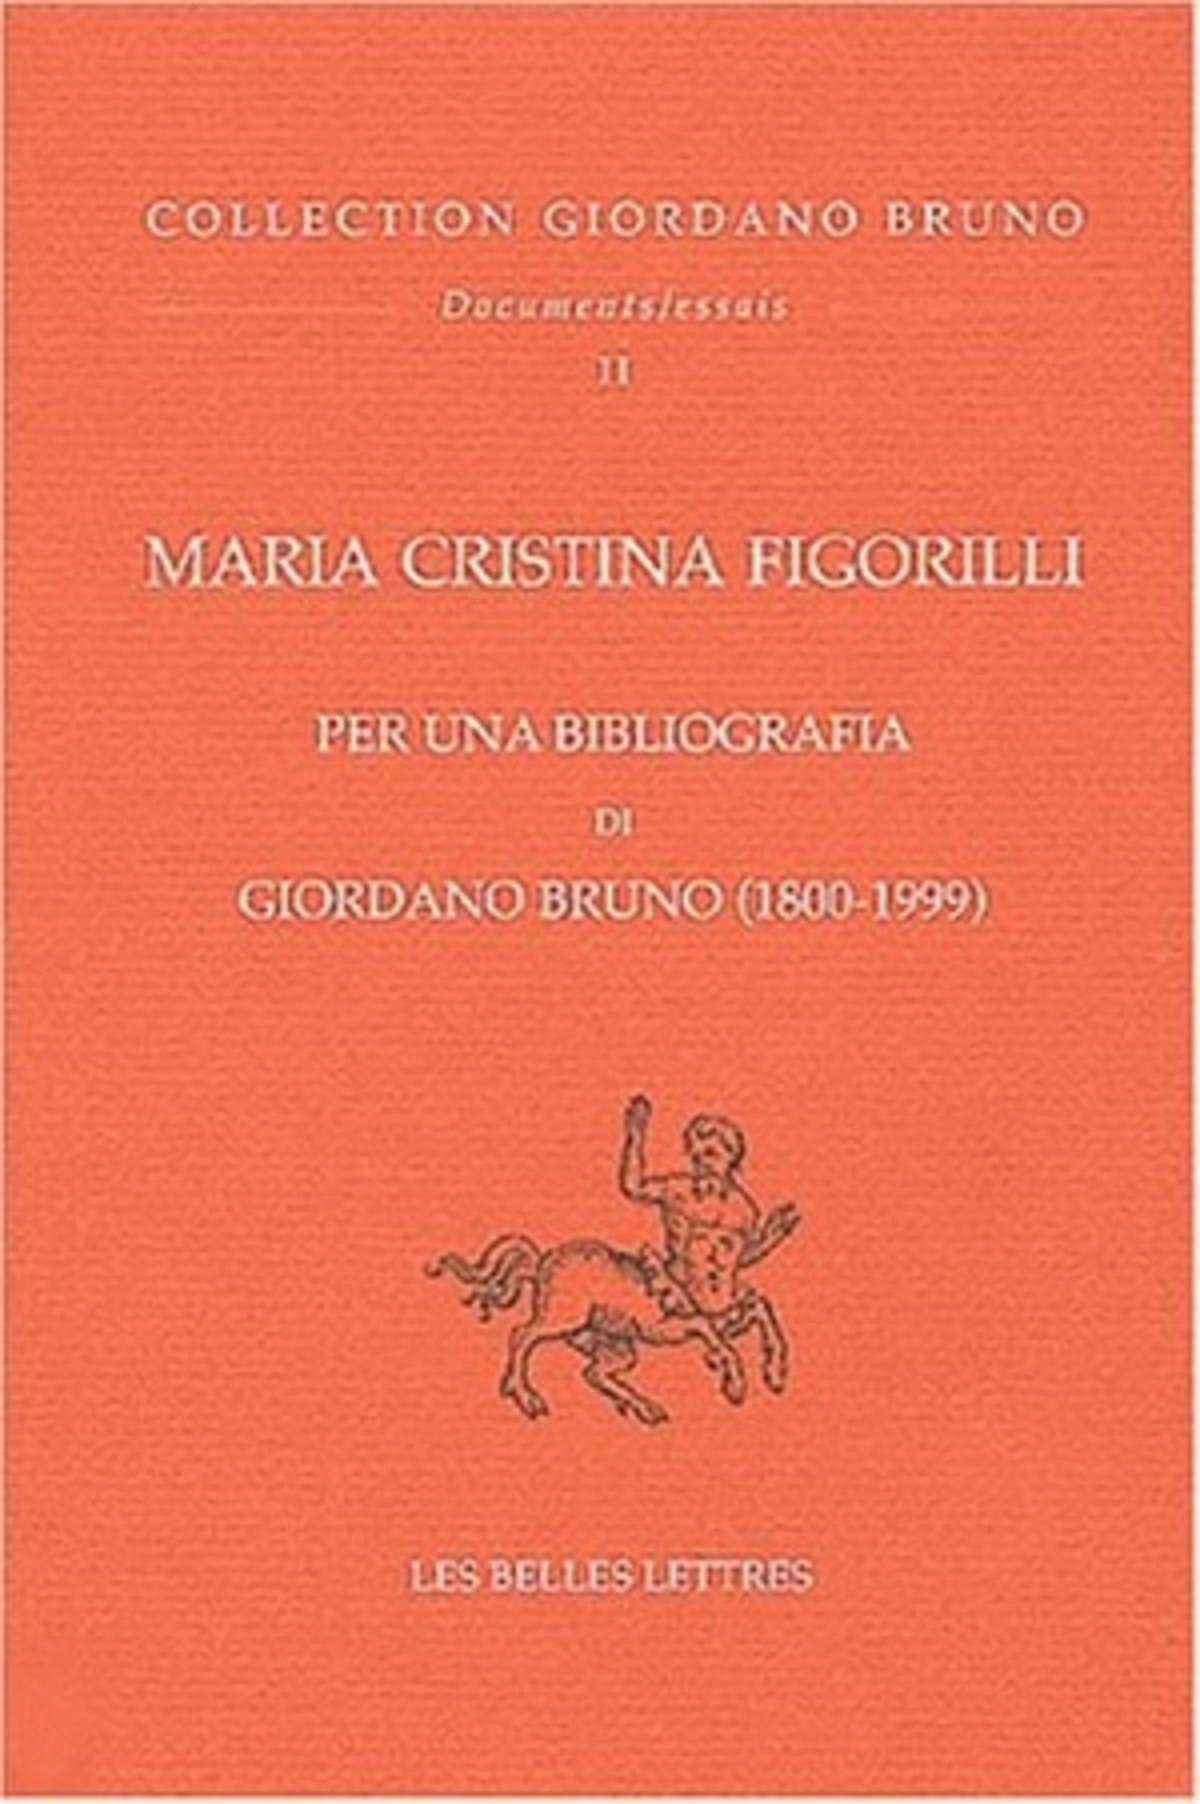 Per una Bibliografia di Giordano Bruno (1800-1999)